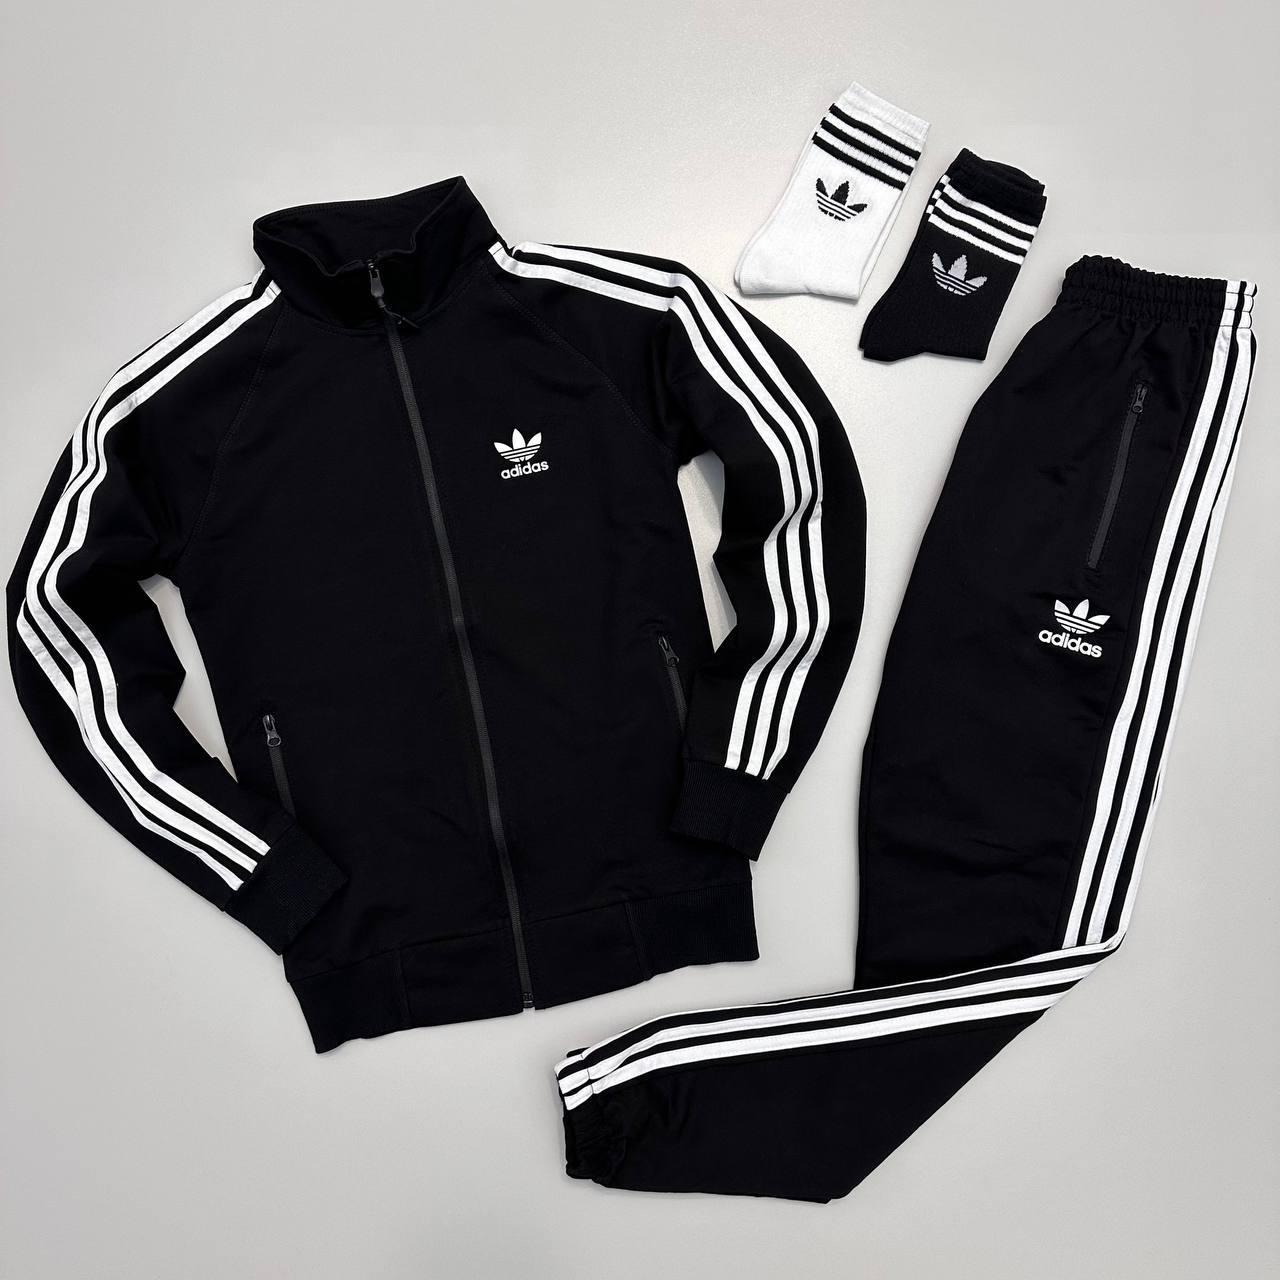 Спортивний костюм Adidas: кофта-штани 2 пари носків у подарунок!